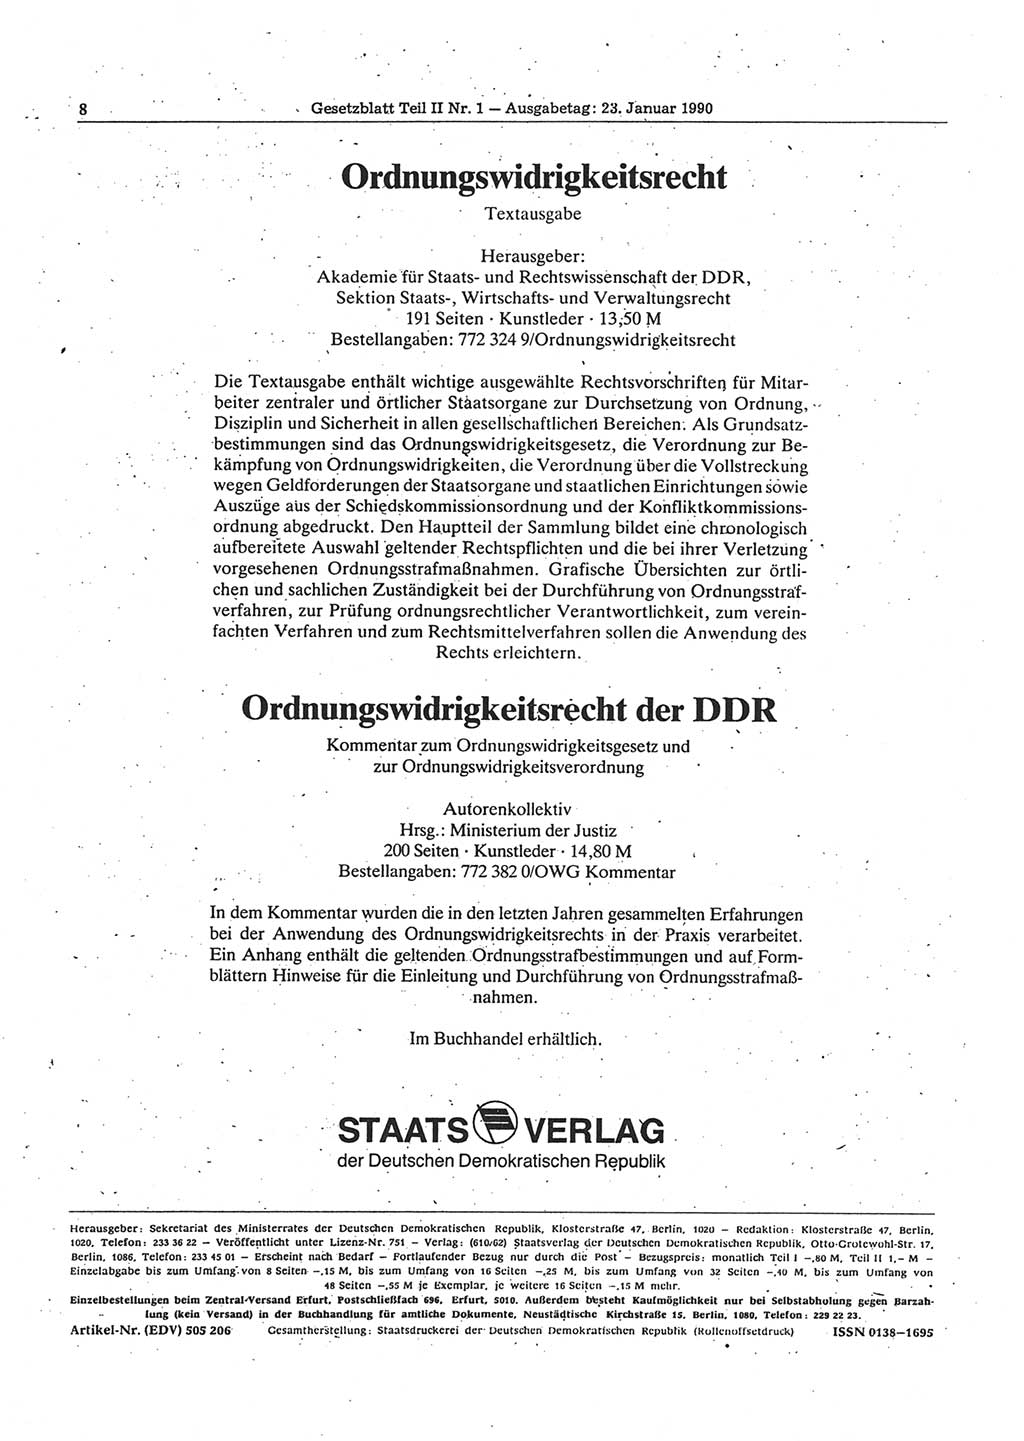 Gesetzblatt (GBl.) der Deutschen Demokratischen Republik (DDR) Teil ⅠⅠ 1990, Seite 8 (GBl. DDR ⅠⅠ 1990, S. 8)